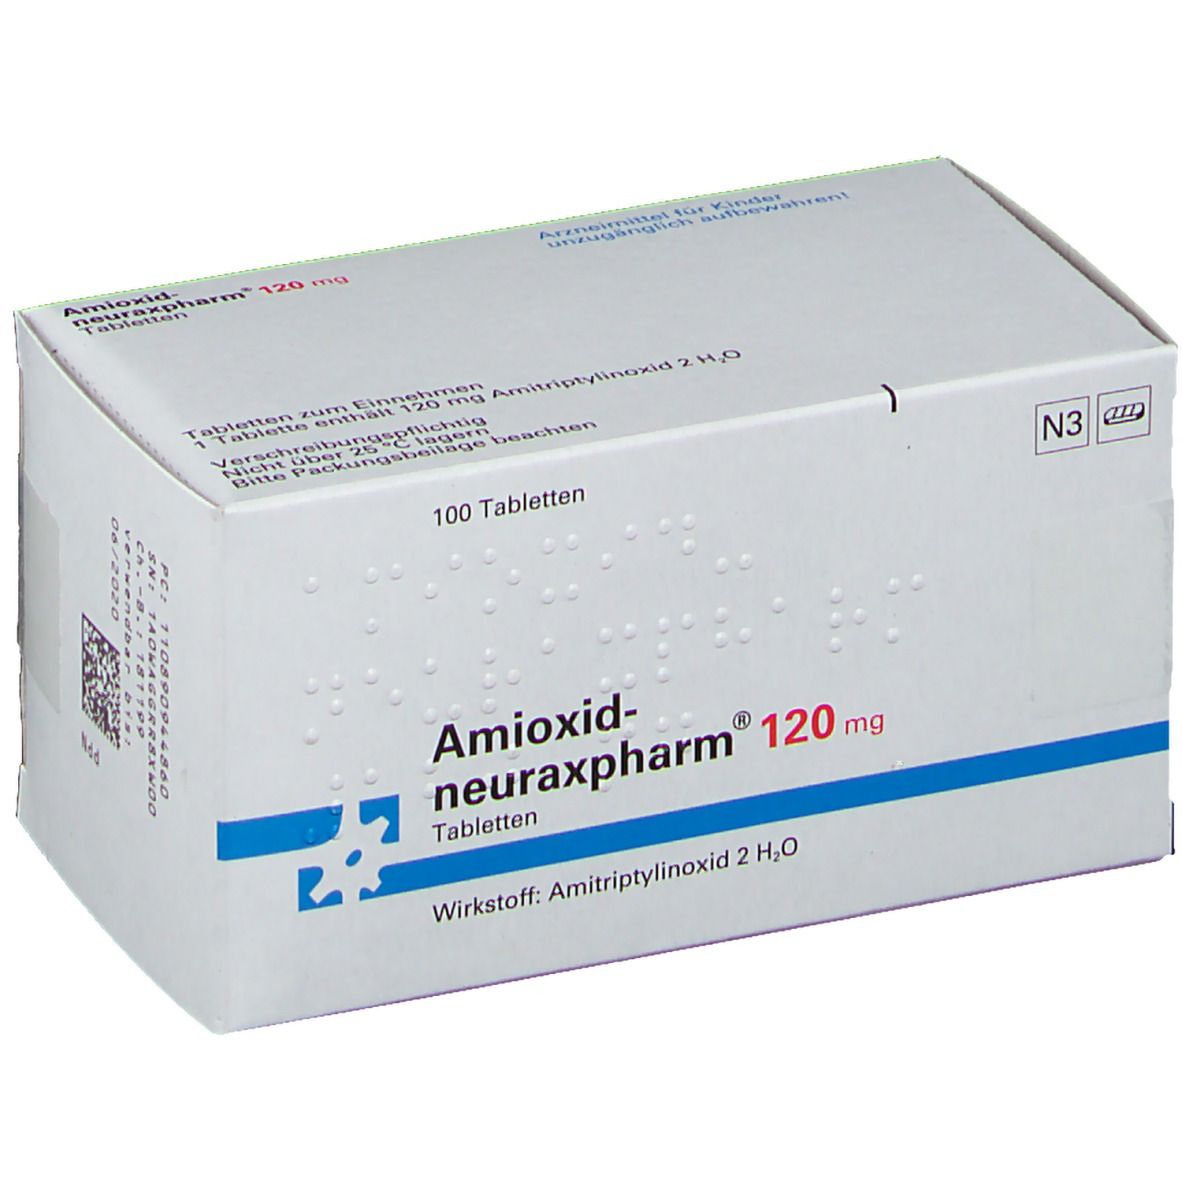 Amioxid-neuraxpharm® 120 mg